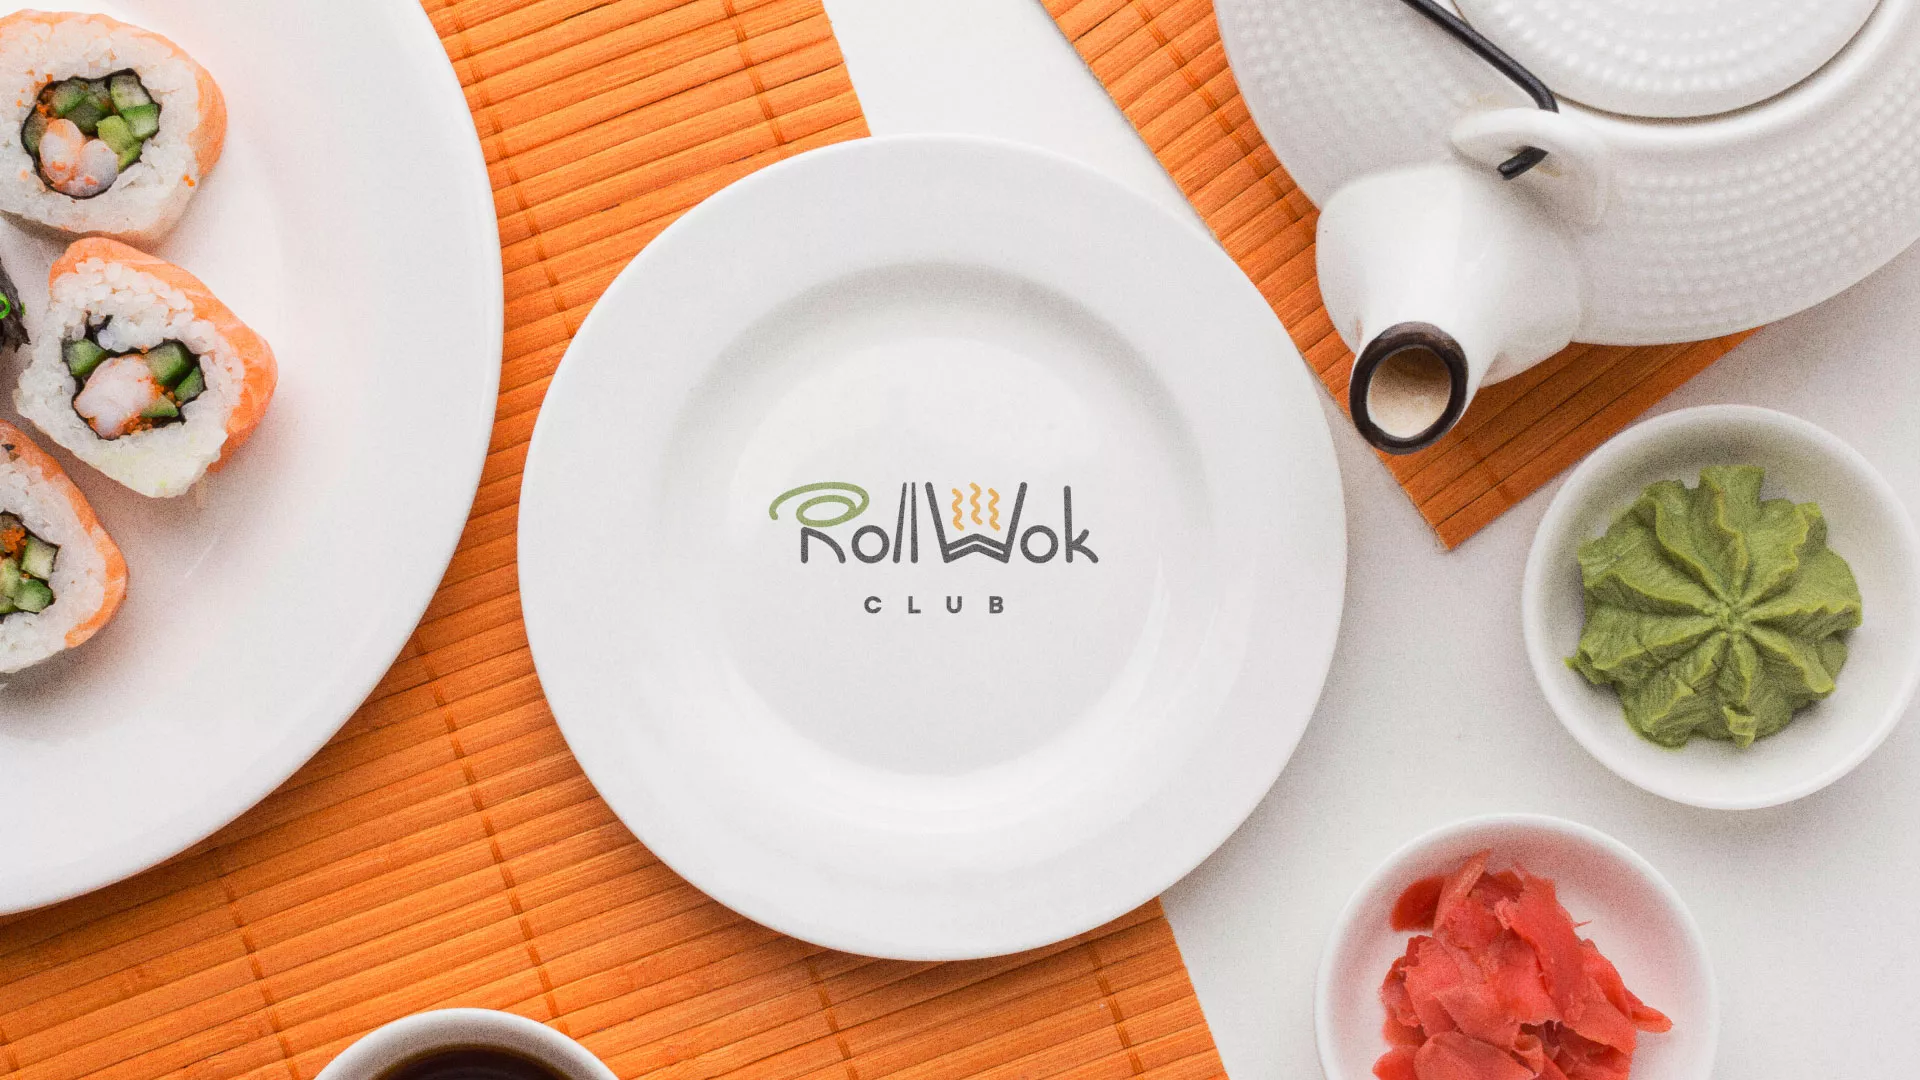 Разработка логотипа и фирменного стиля суши-бара «Roll Wok Club» в Заречном